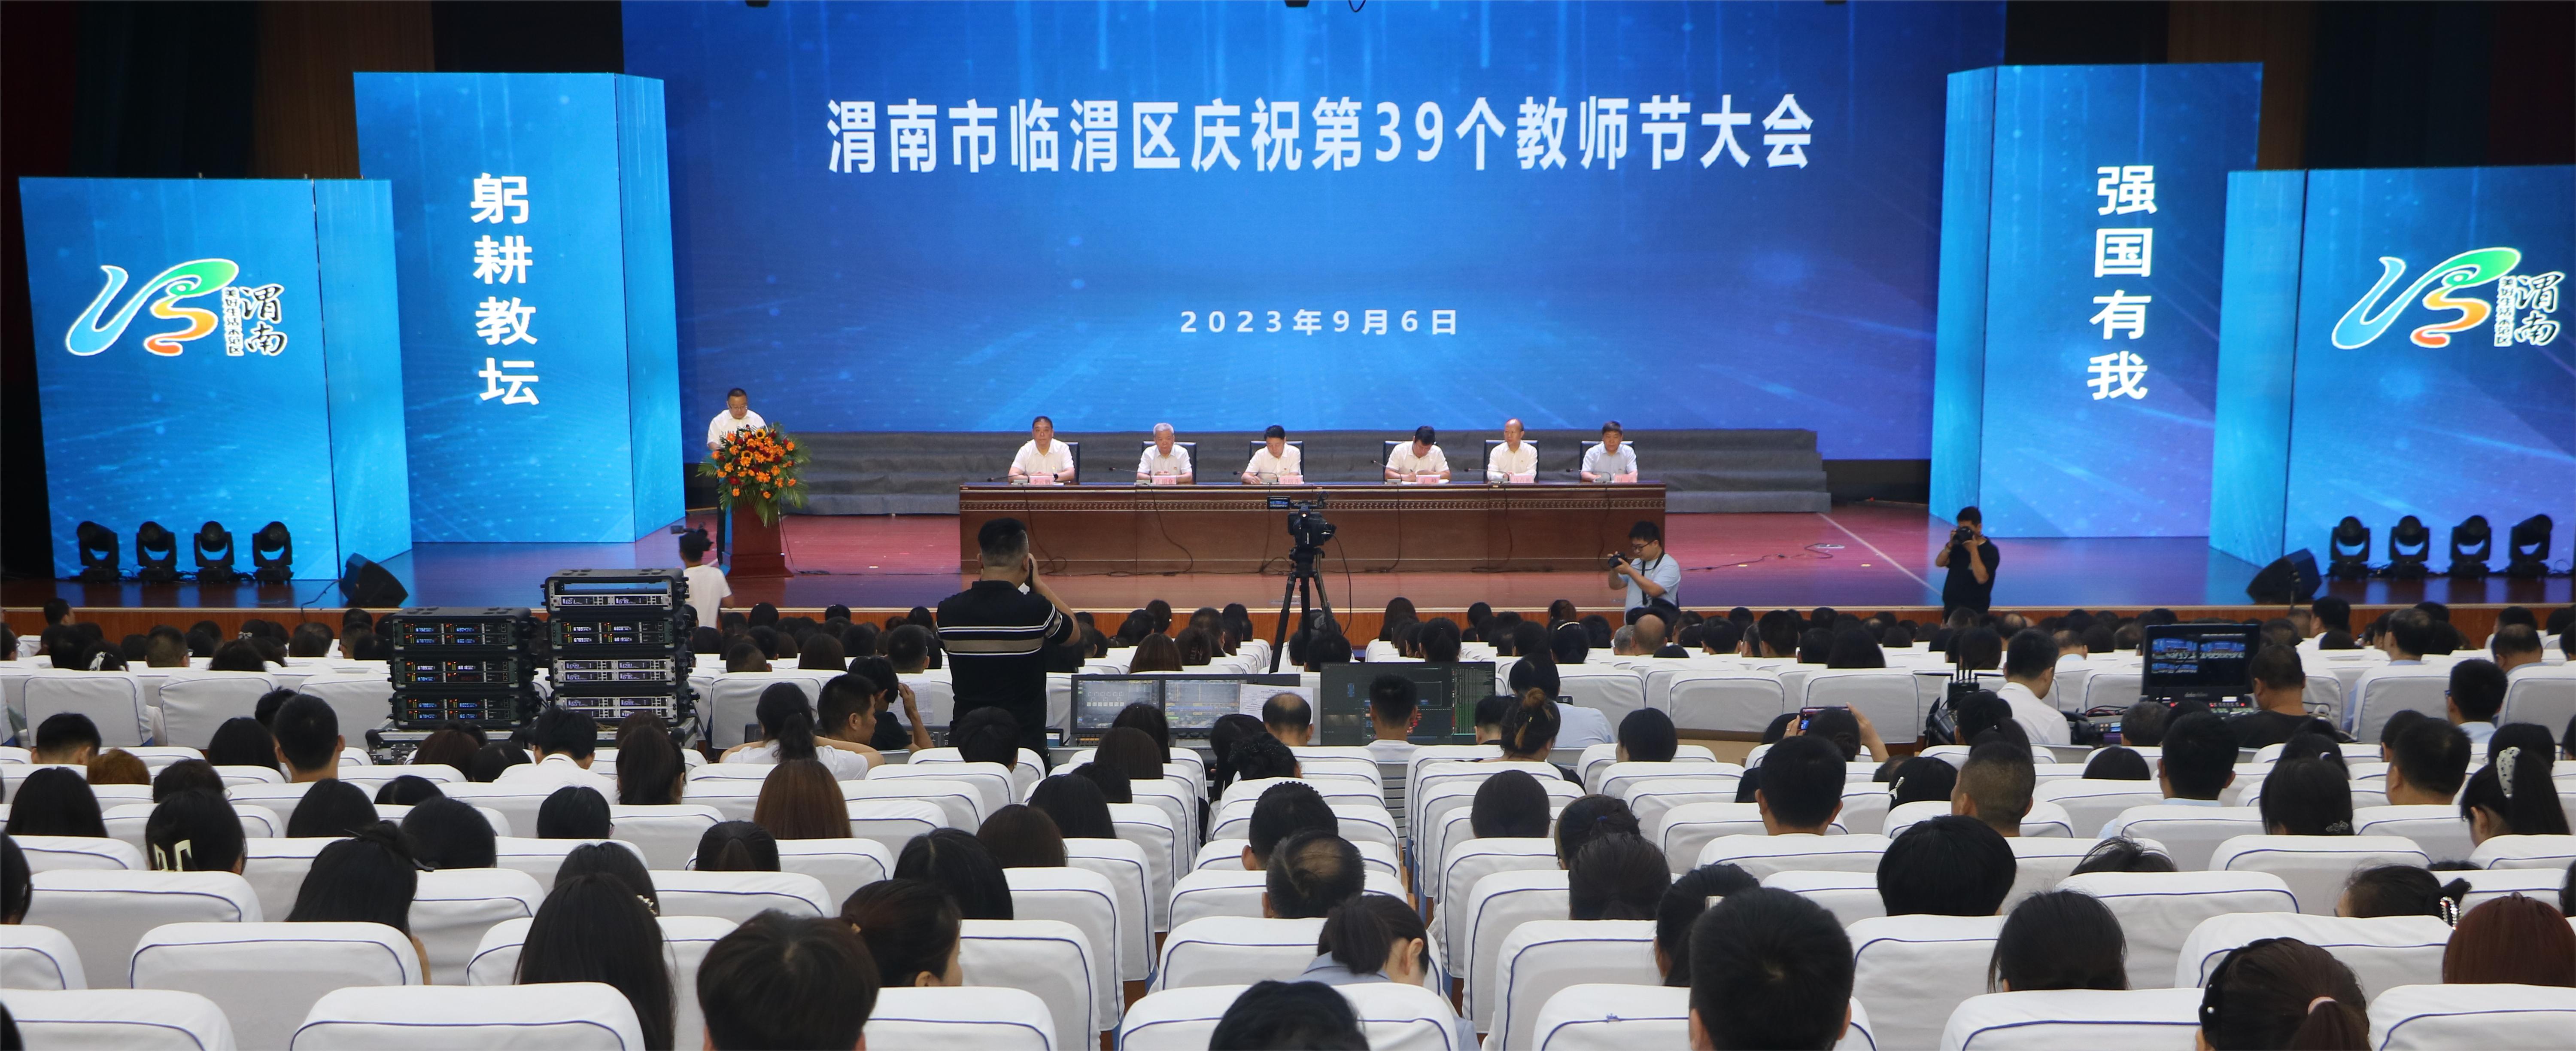 临渭区召开庆祝第39个教师节大会